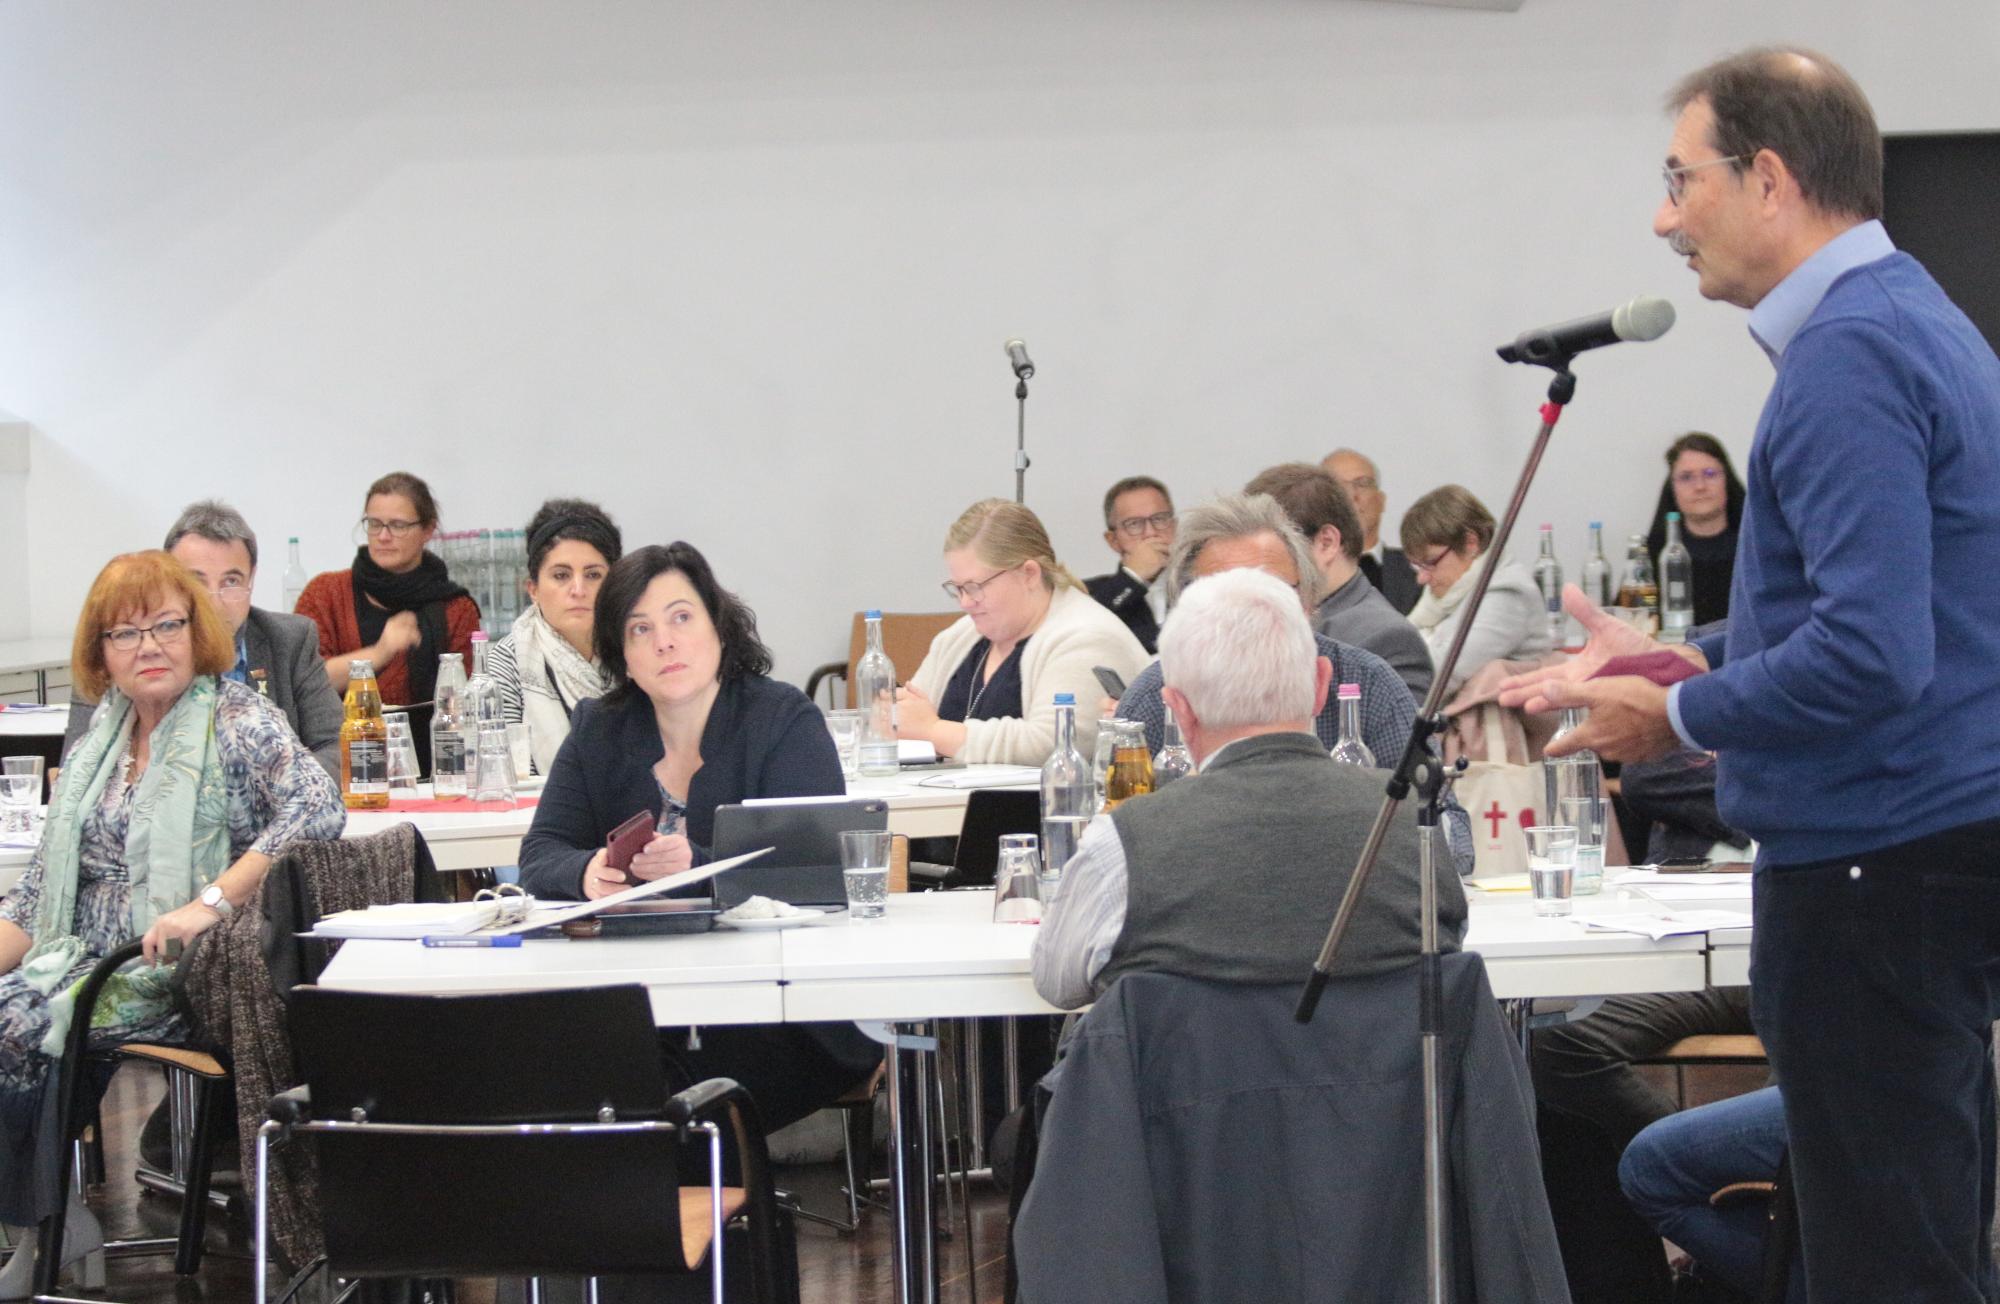 Mainz, 8. Oktober 2022: Diskussion und Austausch bei der Diözesanversammlung im Erbacher Hof. (c) Bistum Mainz / Blum